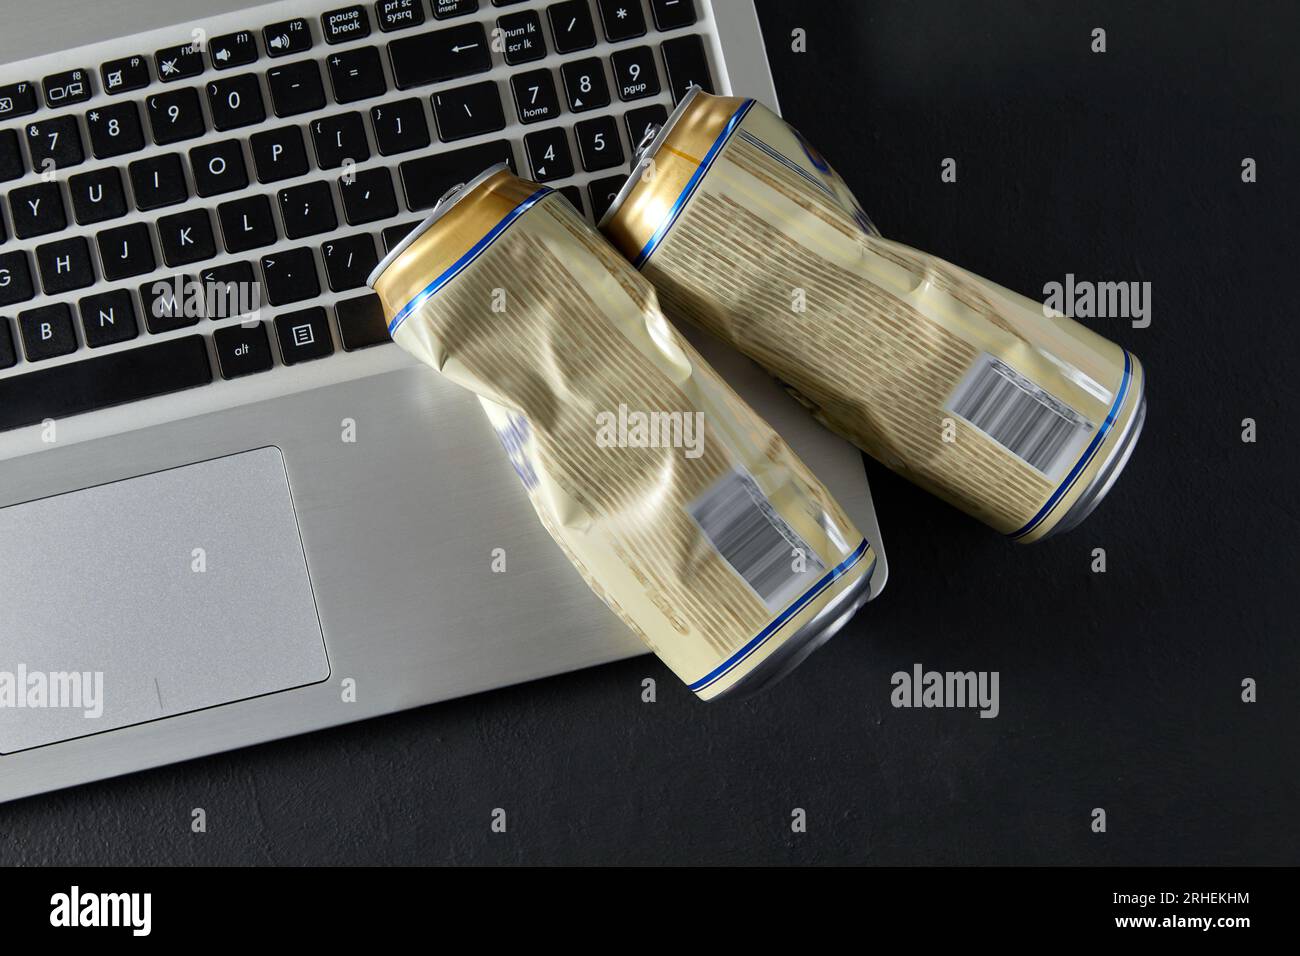 Lattine di birra vuote sulla tastiera del computer portatile su sfondo nero. Combattimenti ubriachi sui social media. Causa del divorzio in famiglia Foto Stock